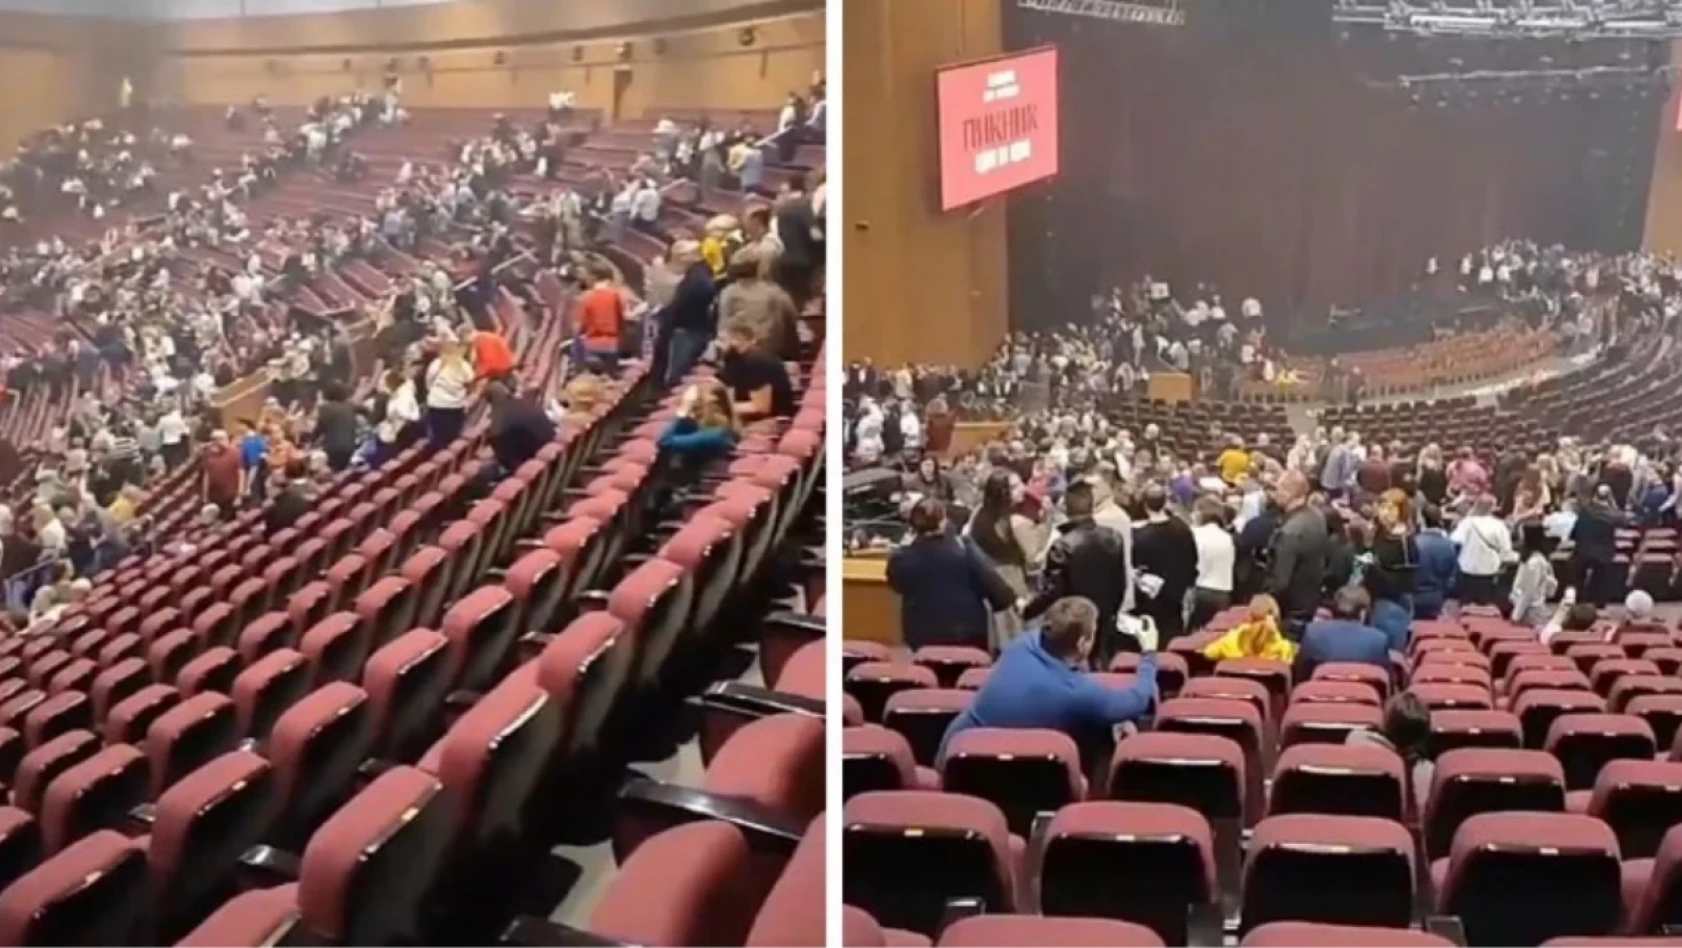 Resmen katliam! Moskova'daki kanlı saldırıda konser salonun içinden görüntüler